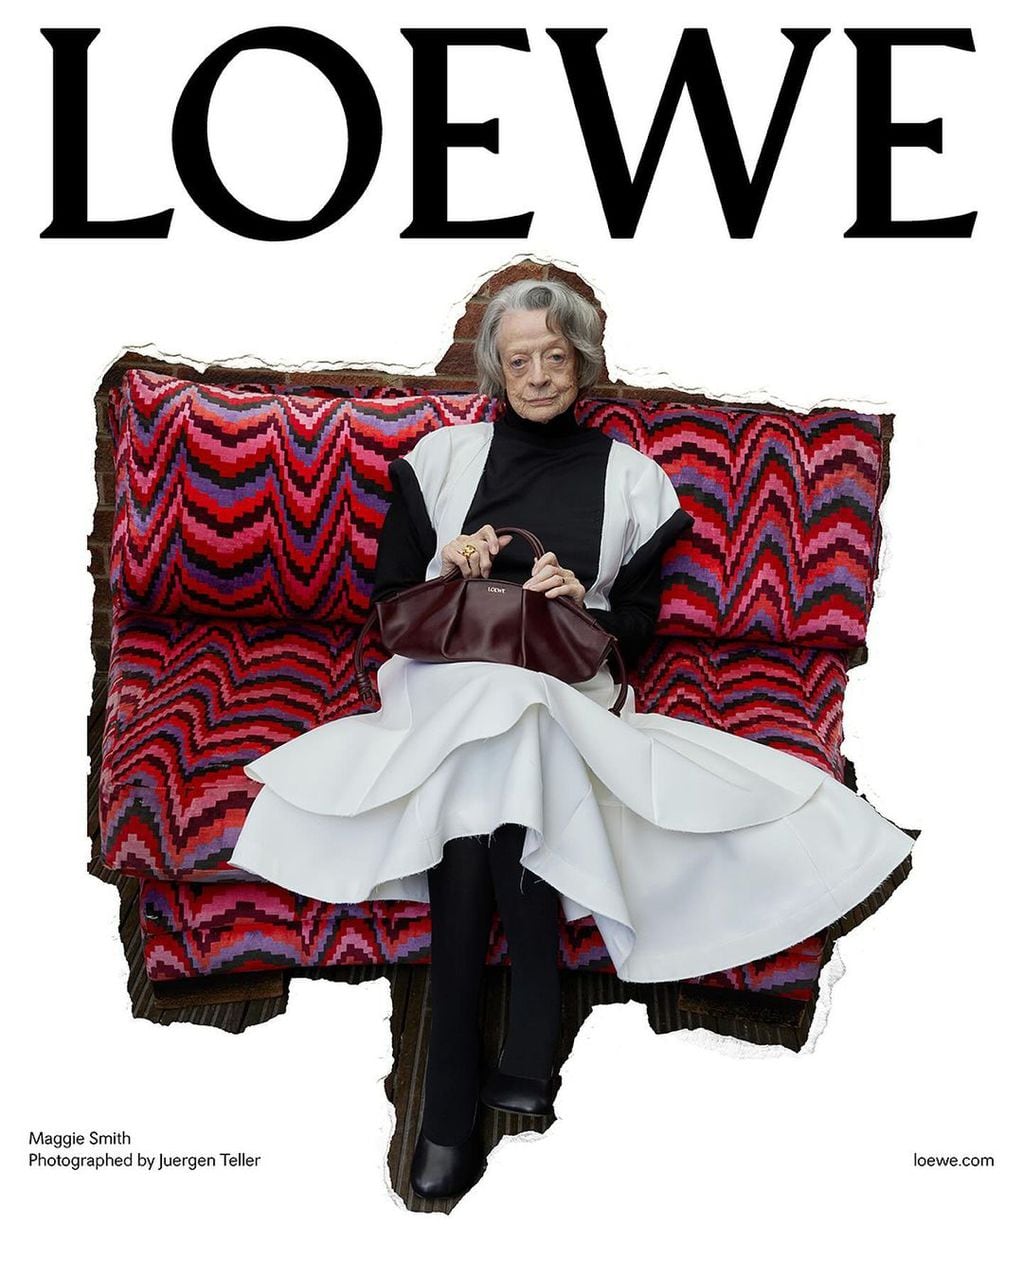 Maggie Smith modeló a sus 88 años para Loewe.